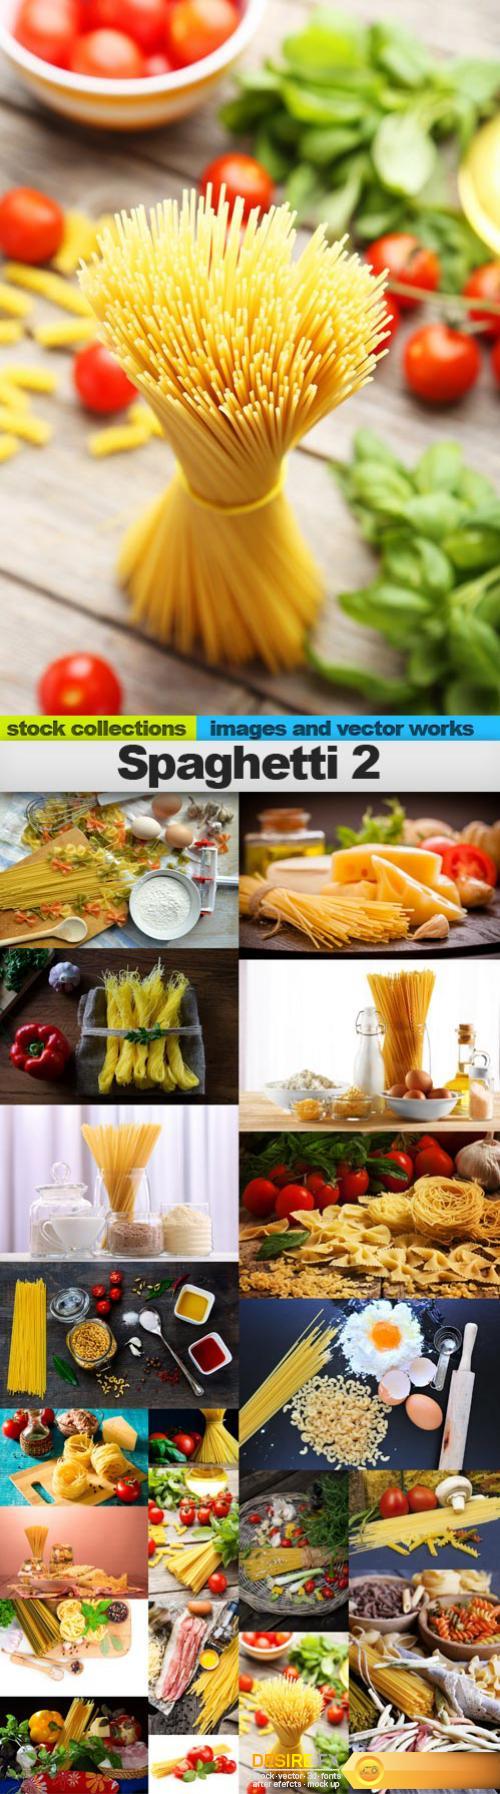 Spaghetti 2, 20 x UHQ JPEG